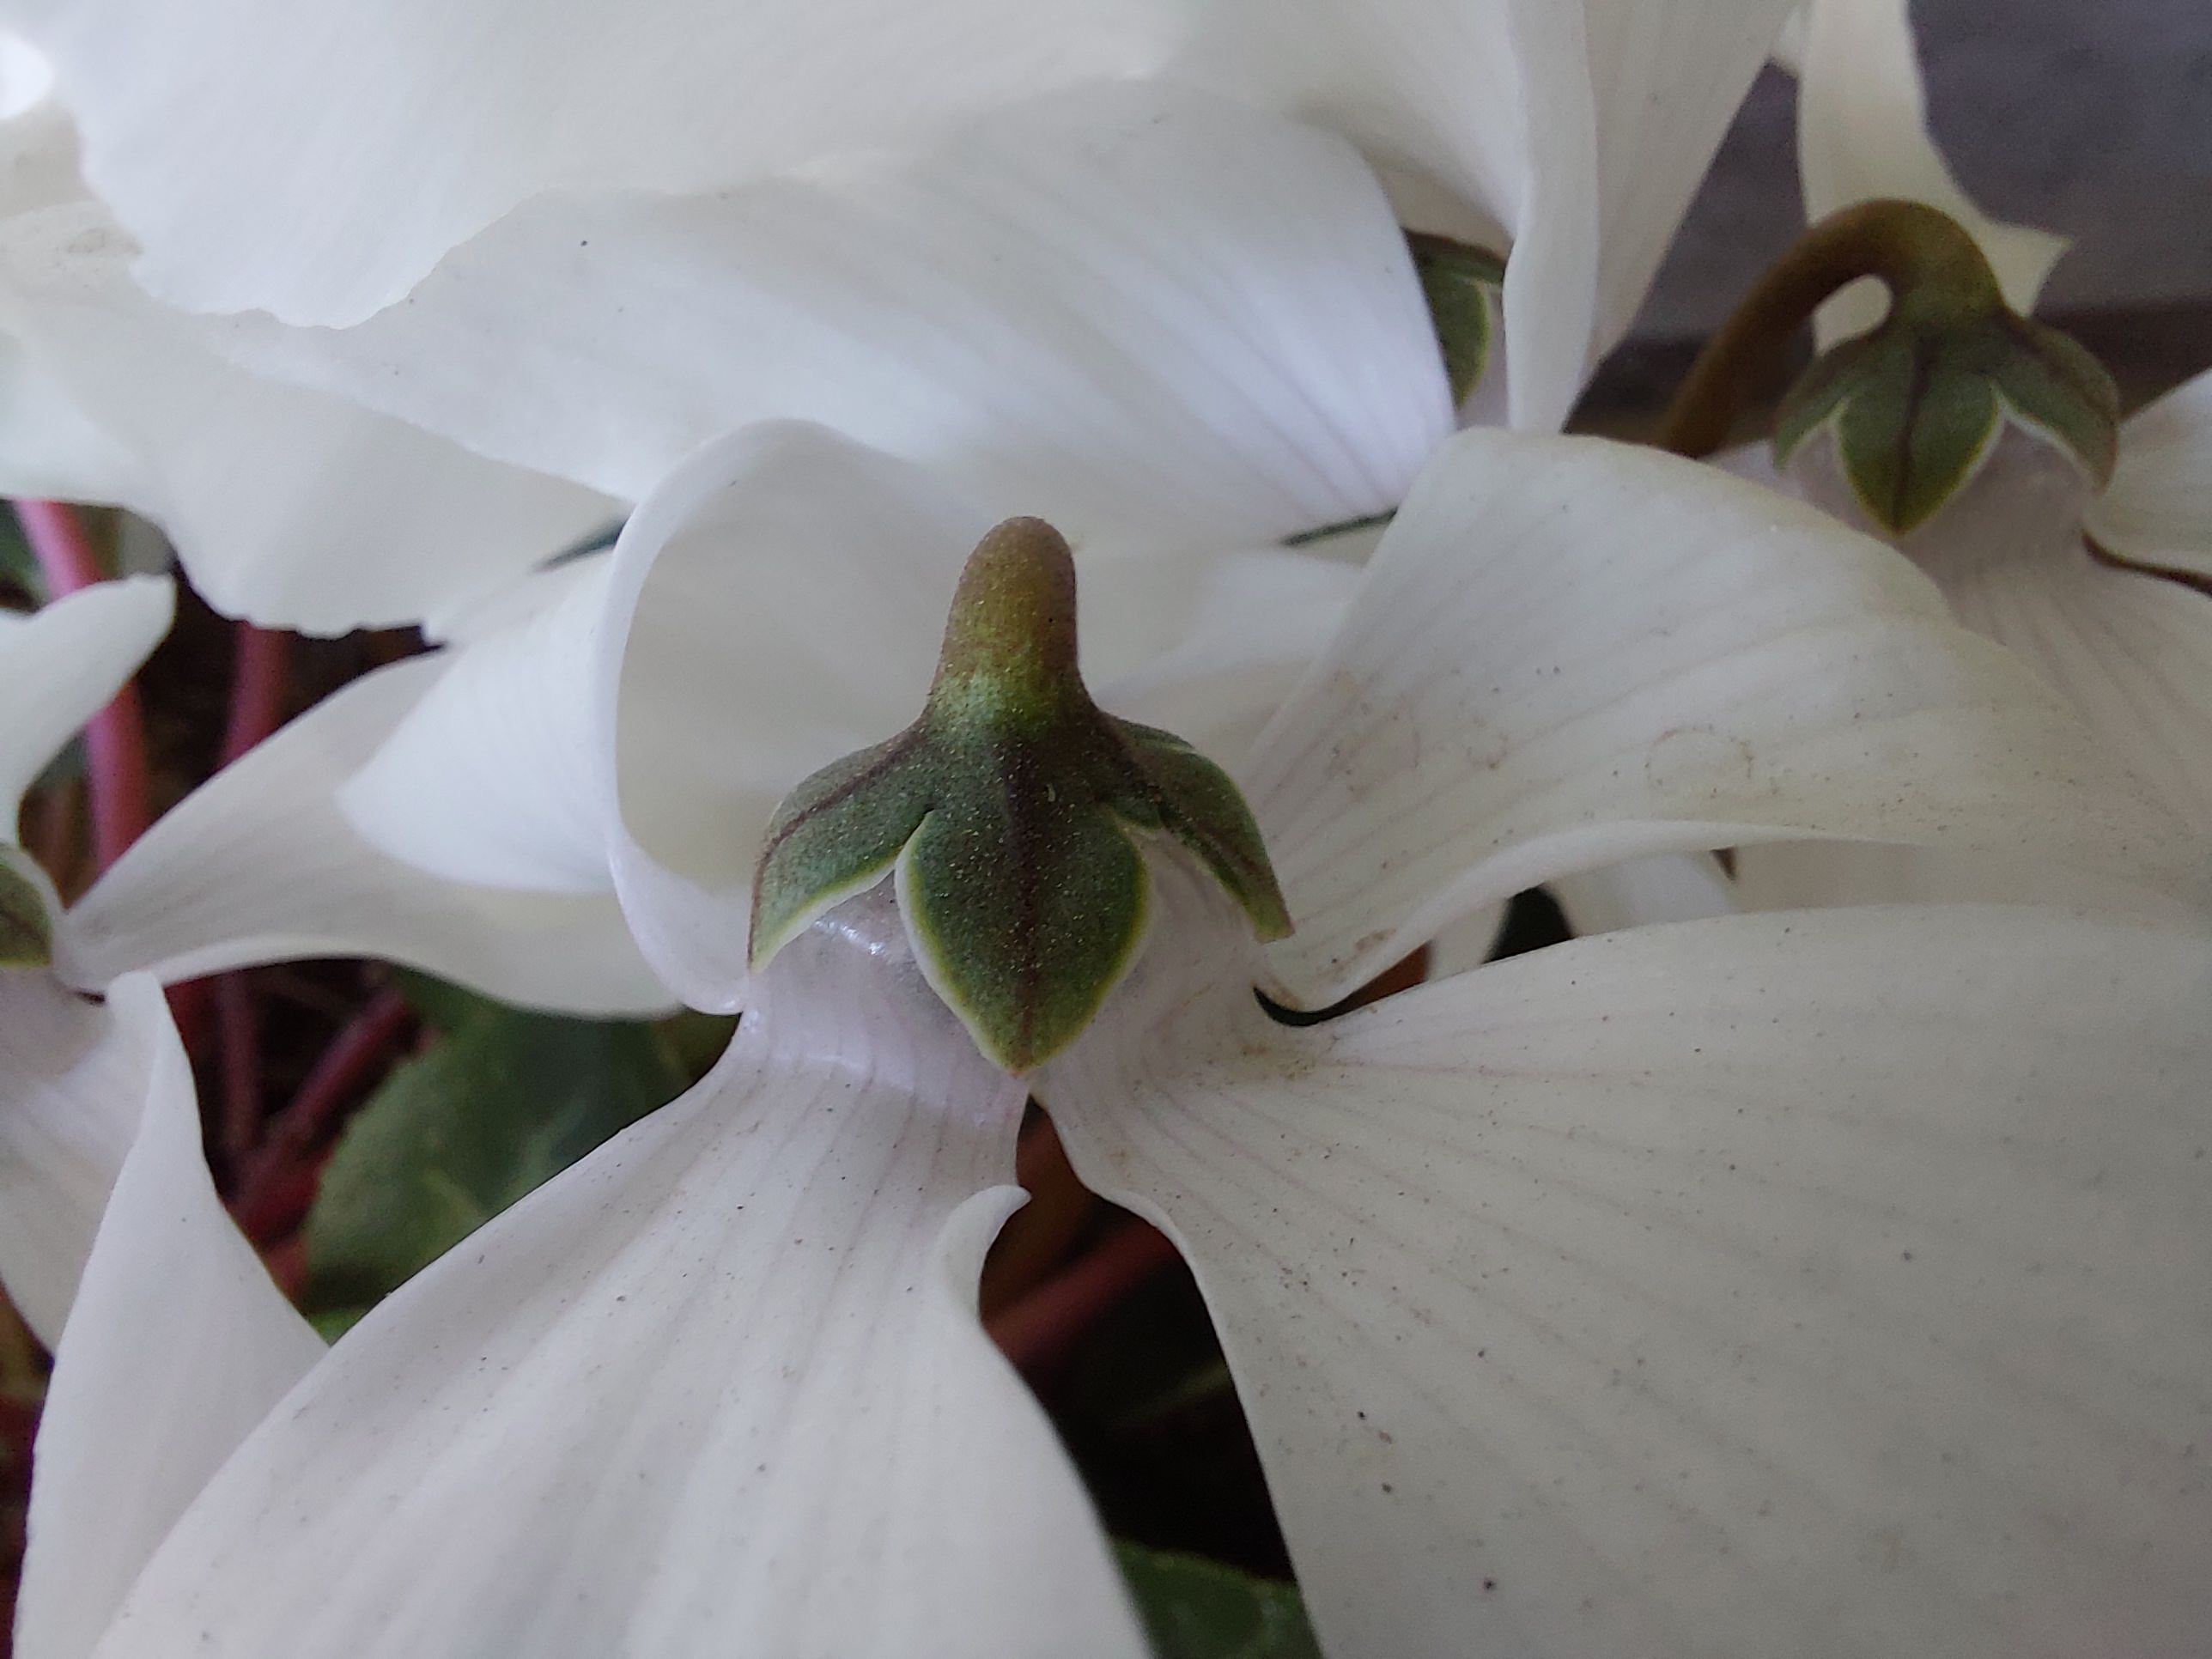 عکس نمونه دوربین ماکرو گلکسی A72 - یک گل سفید از نمای نزدیک